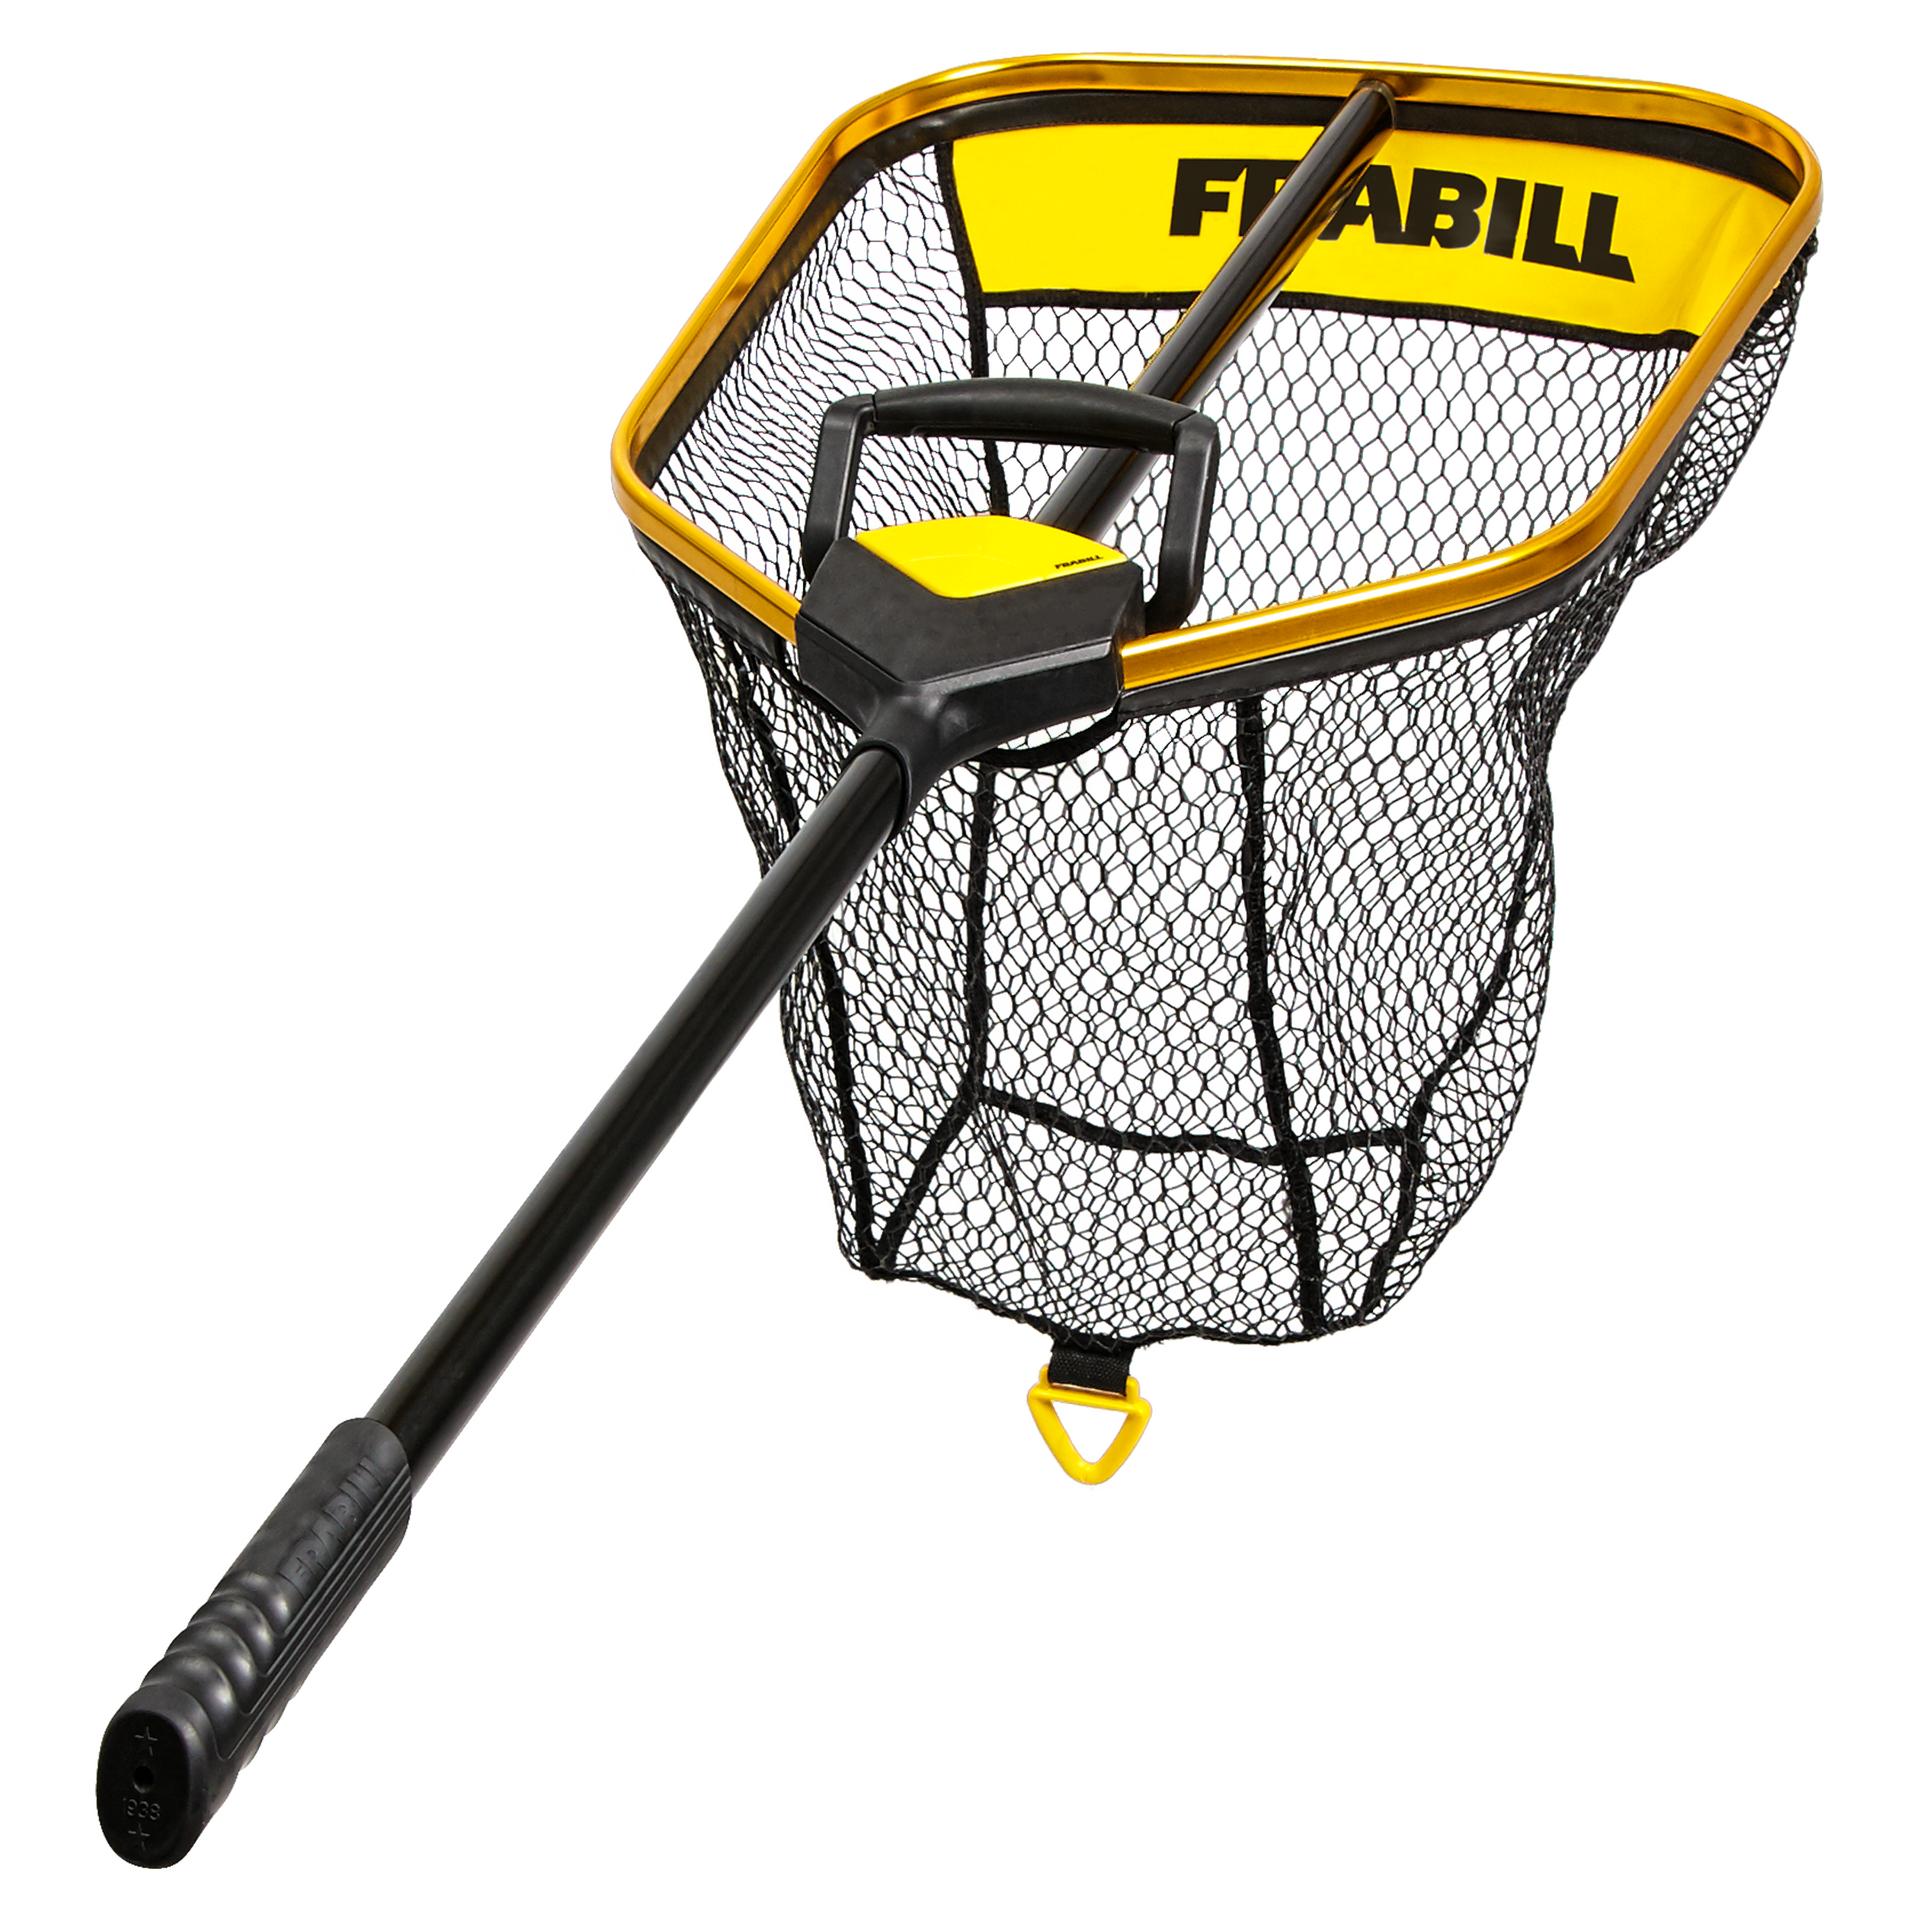 Frabill FRBNX24S Trophy Haul Landing Net - Black/Yellow - 24''x27